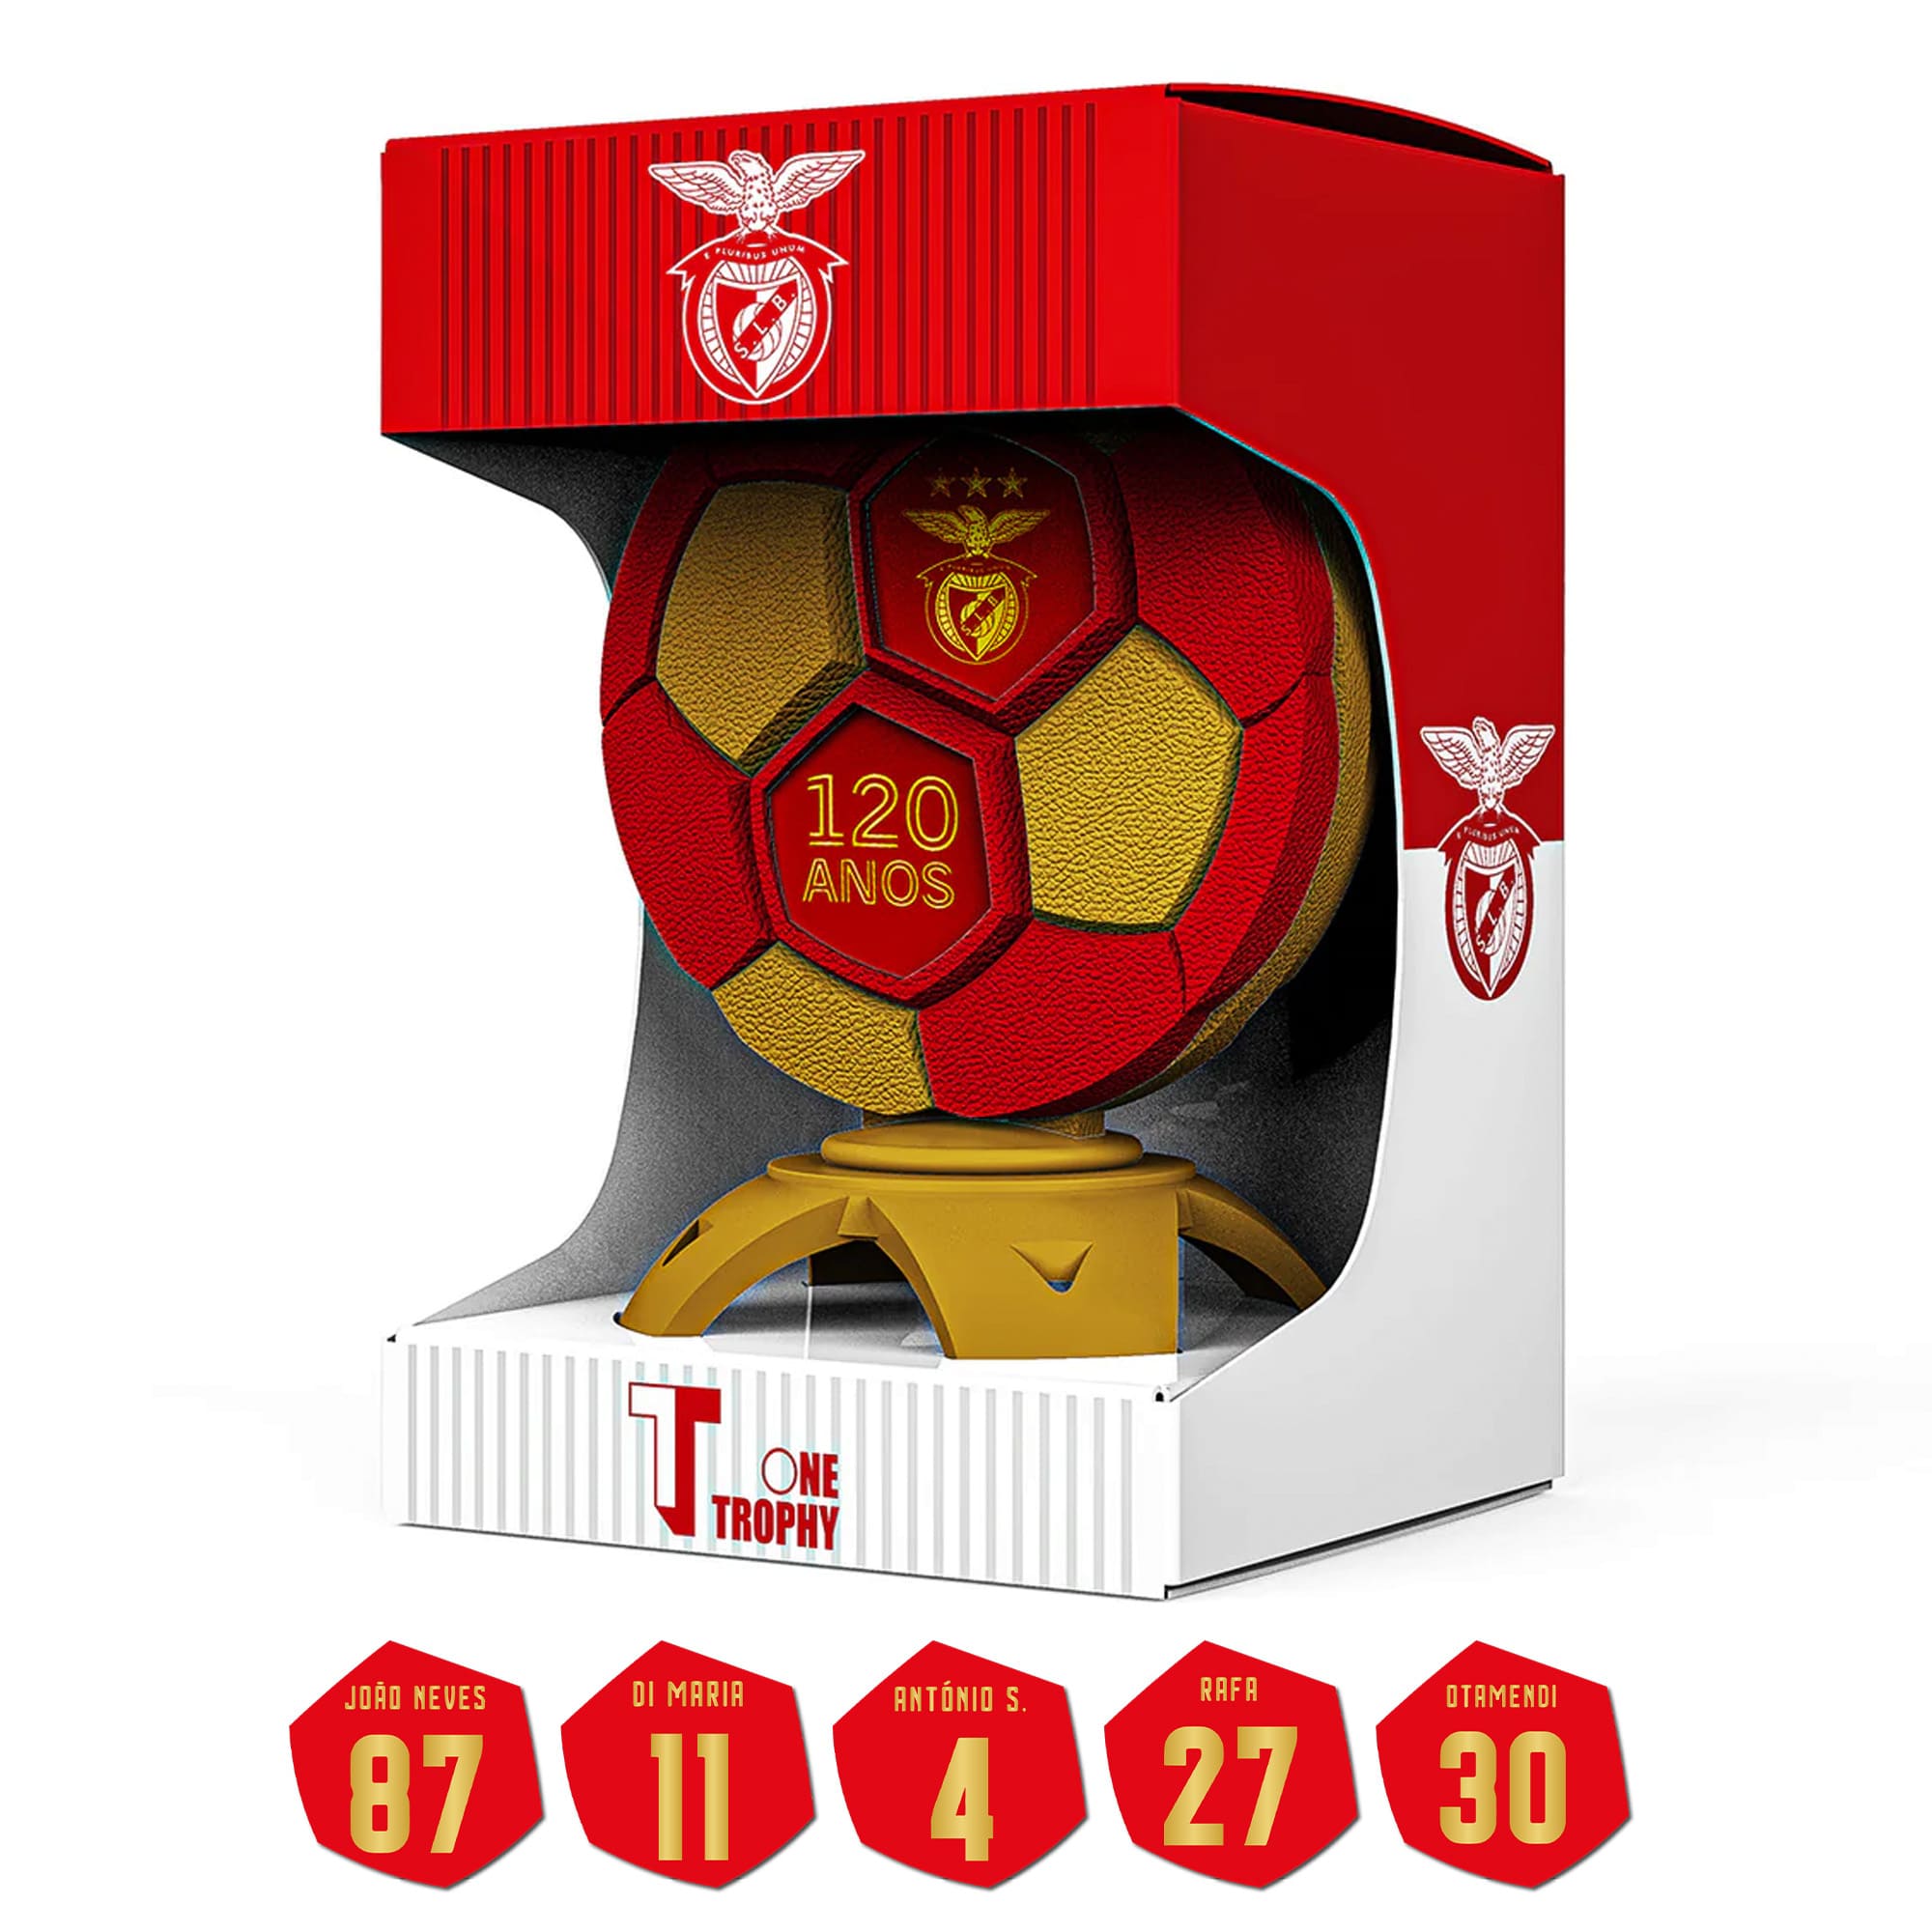 OneTrophy X SL Benfica - 120 Anos - Pochette de noms de joueurs offerte